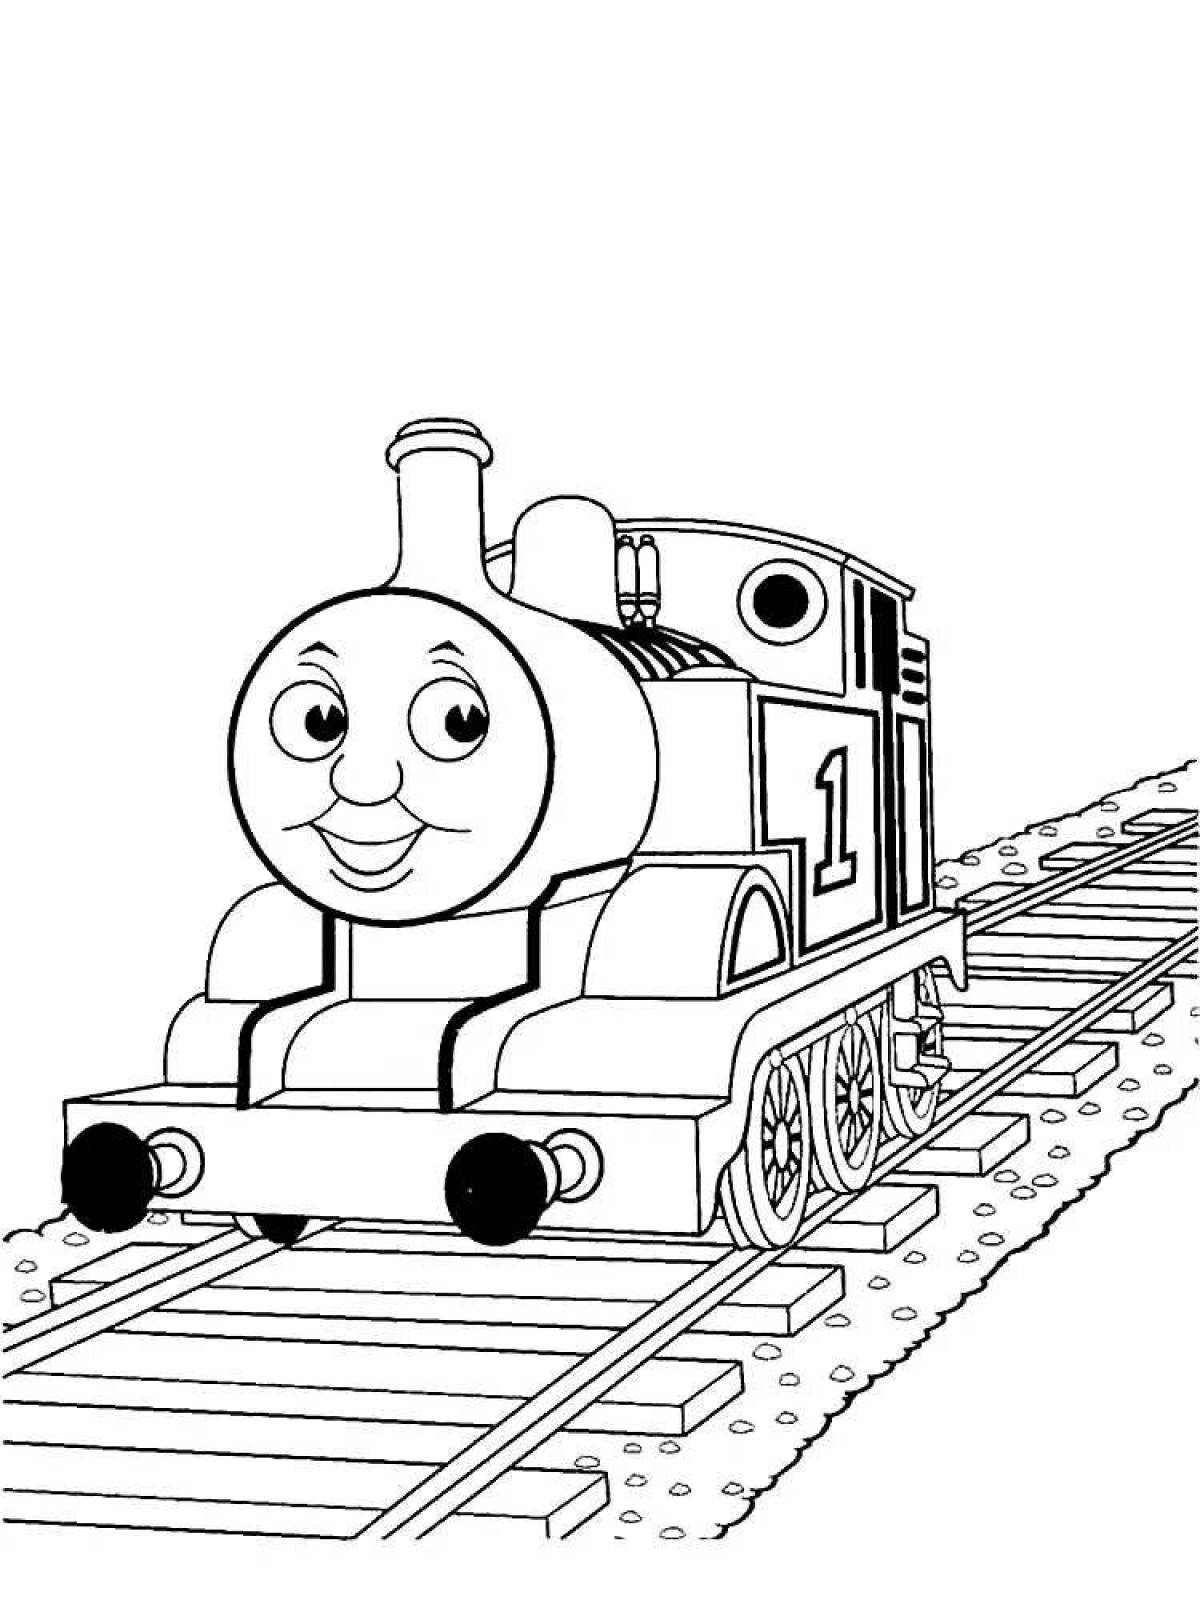 Увлекательная раскраска поезда томаса